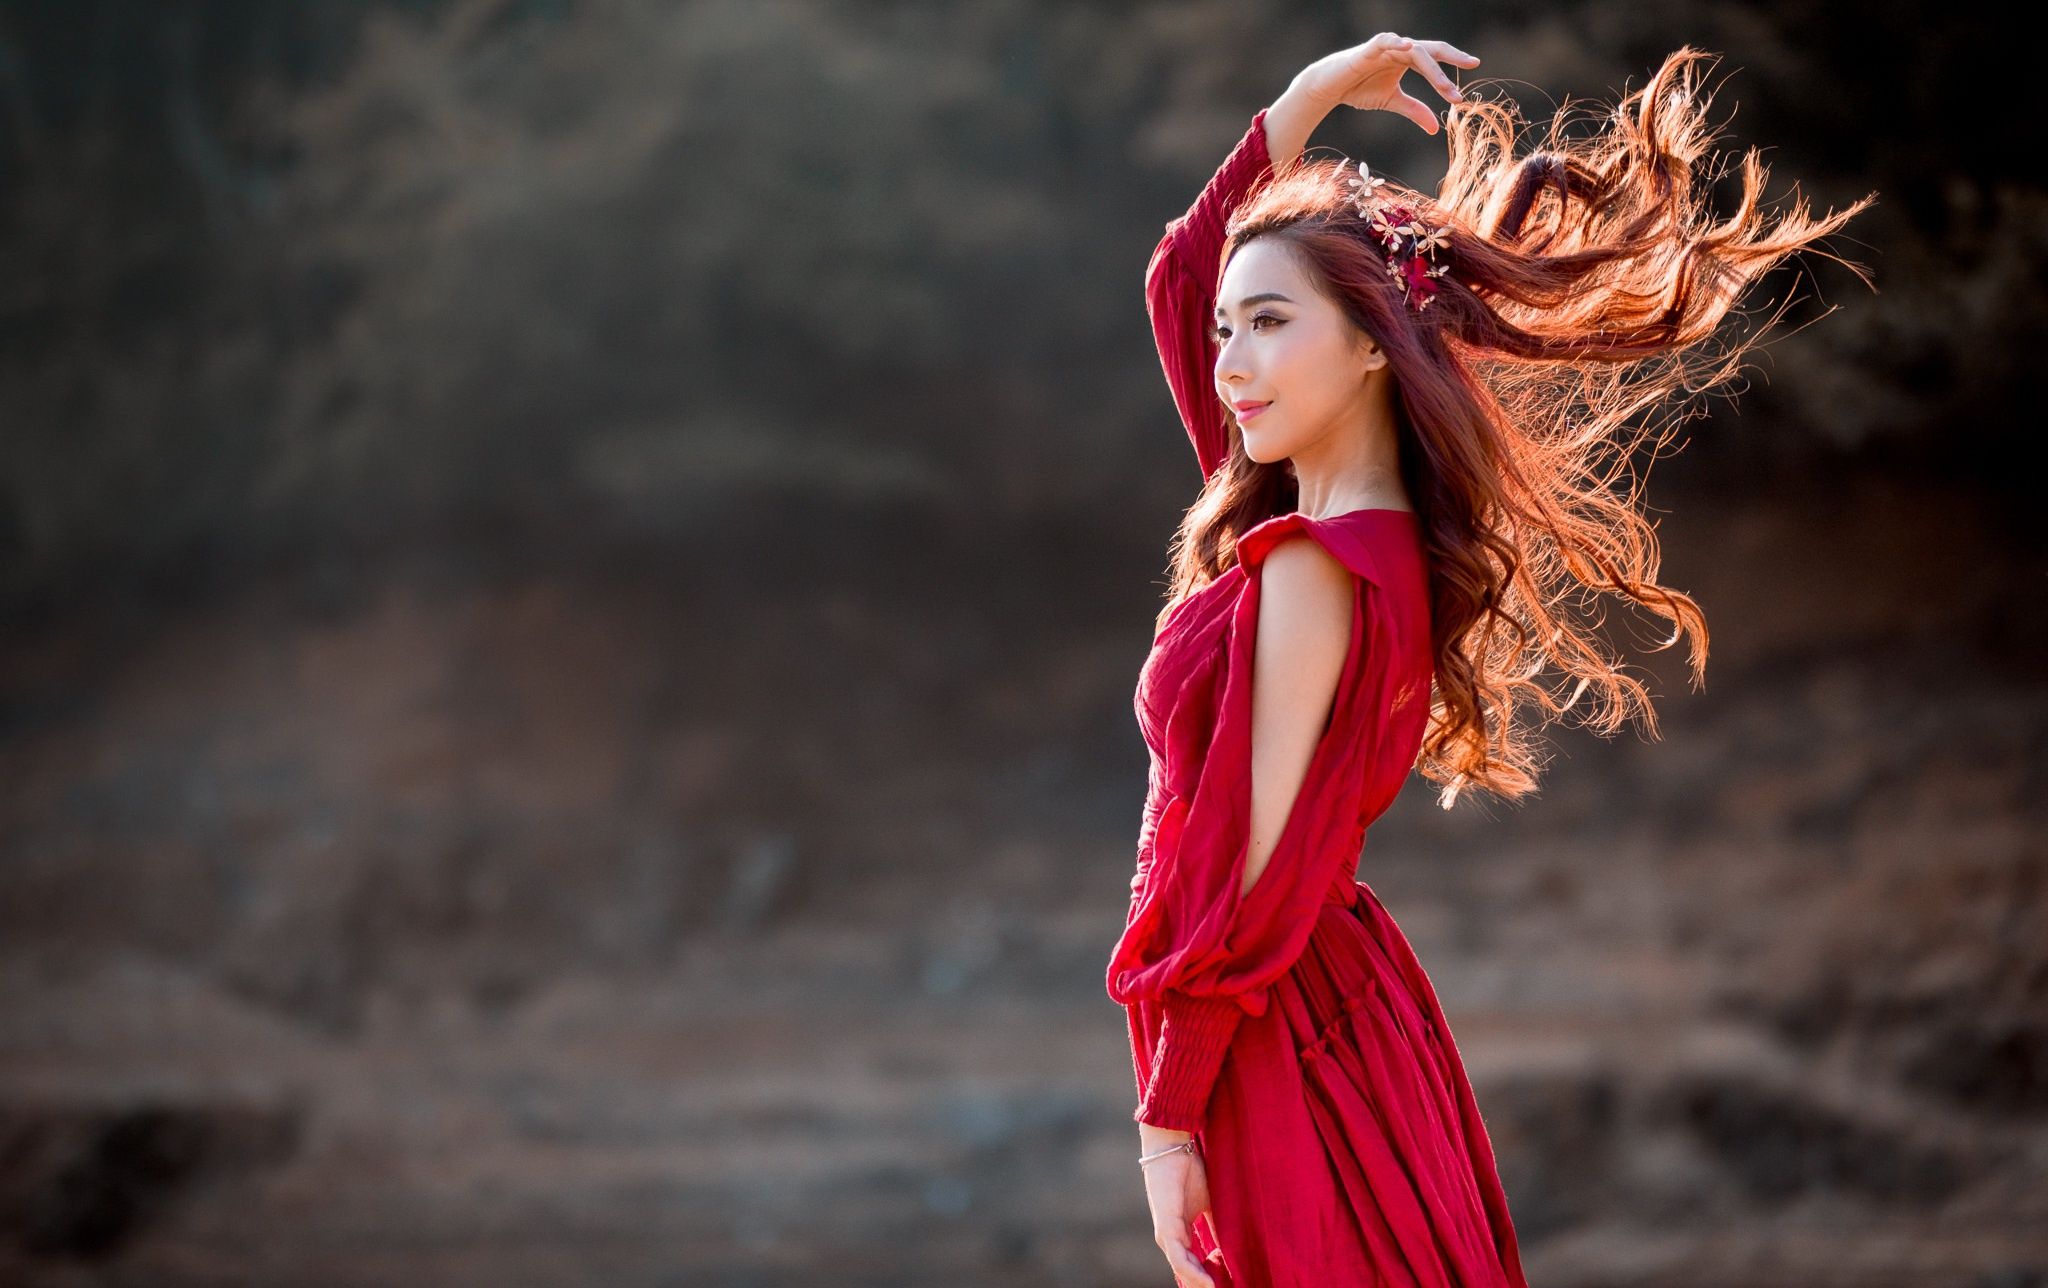 #model, #red dress, #Asian, #women outdoors, #long hair